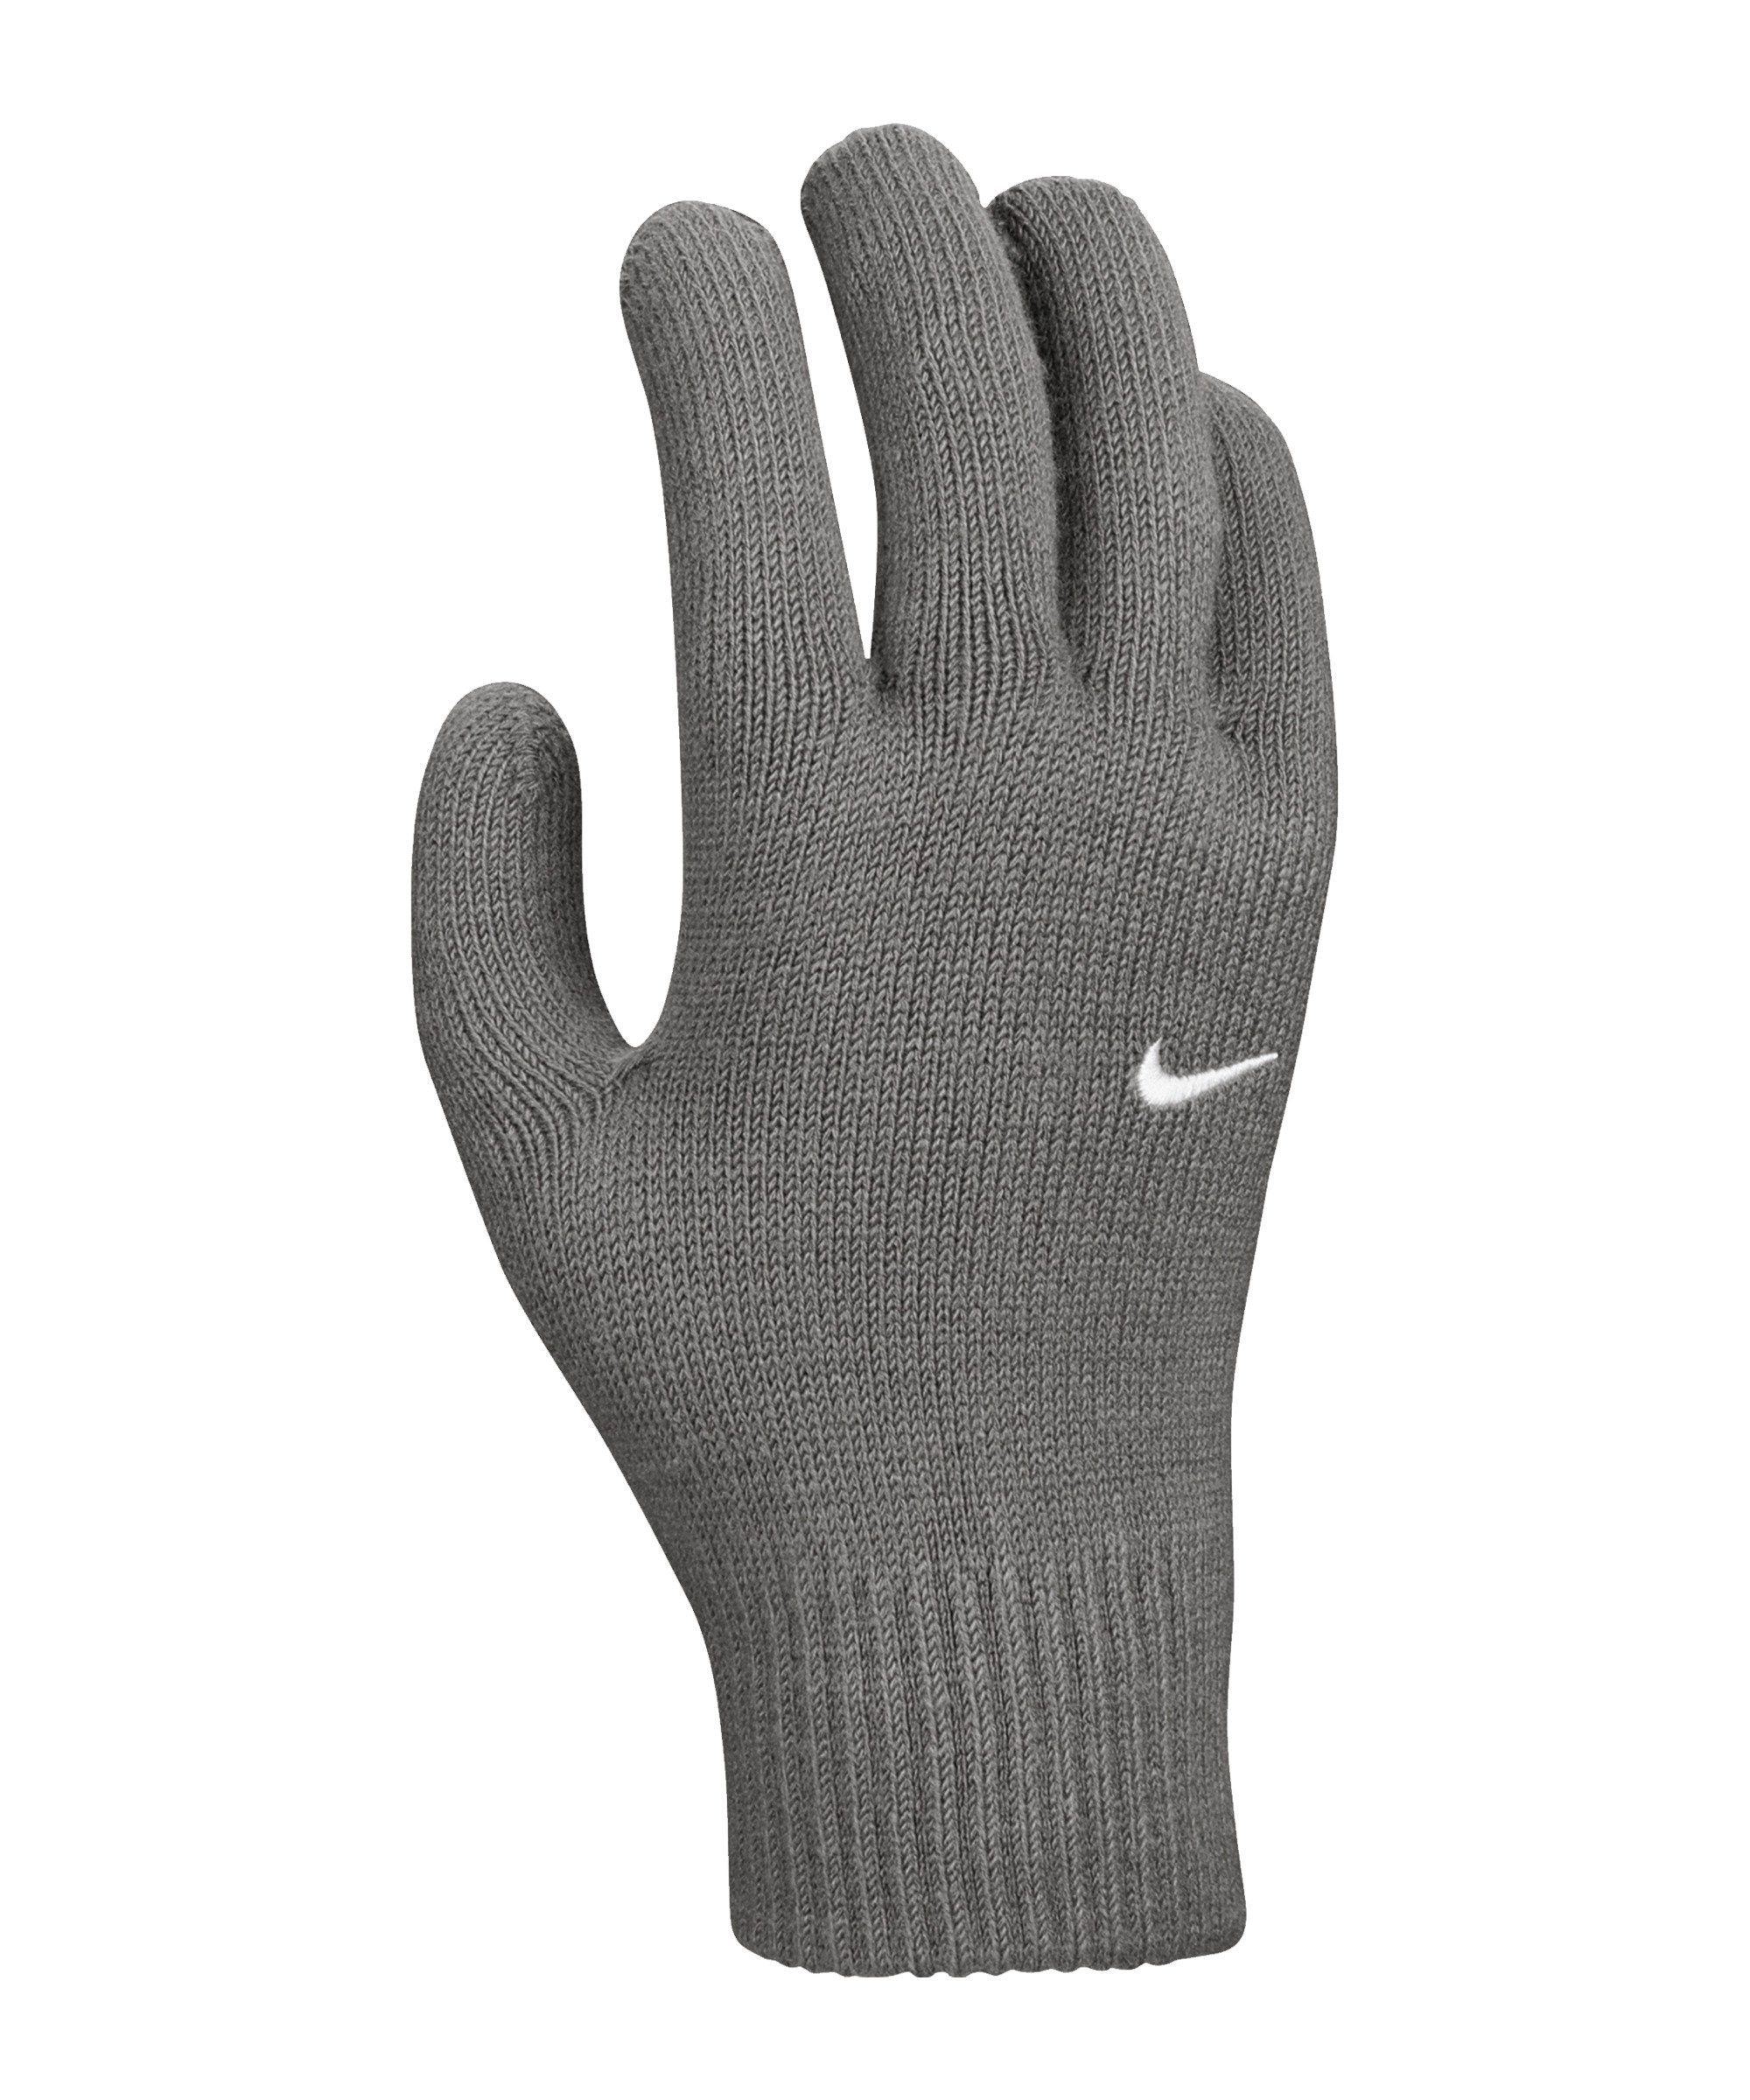 2.0 Swoosh Spielerhandschuhe Nike grauweiss Knit Feldspielerhandschuhe